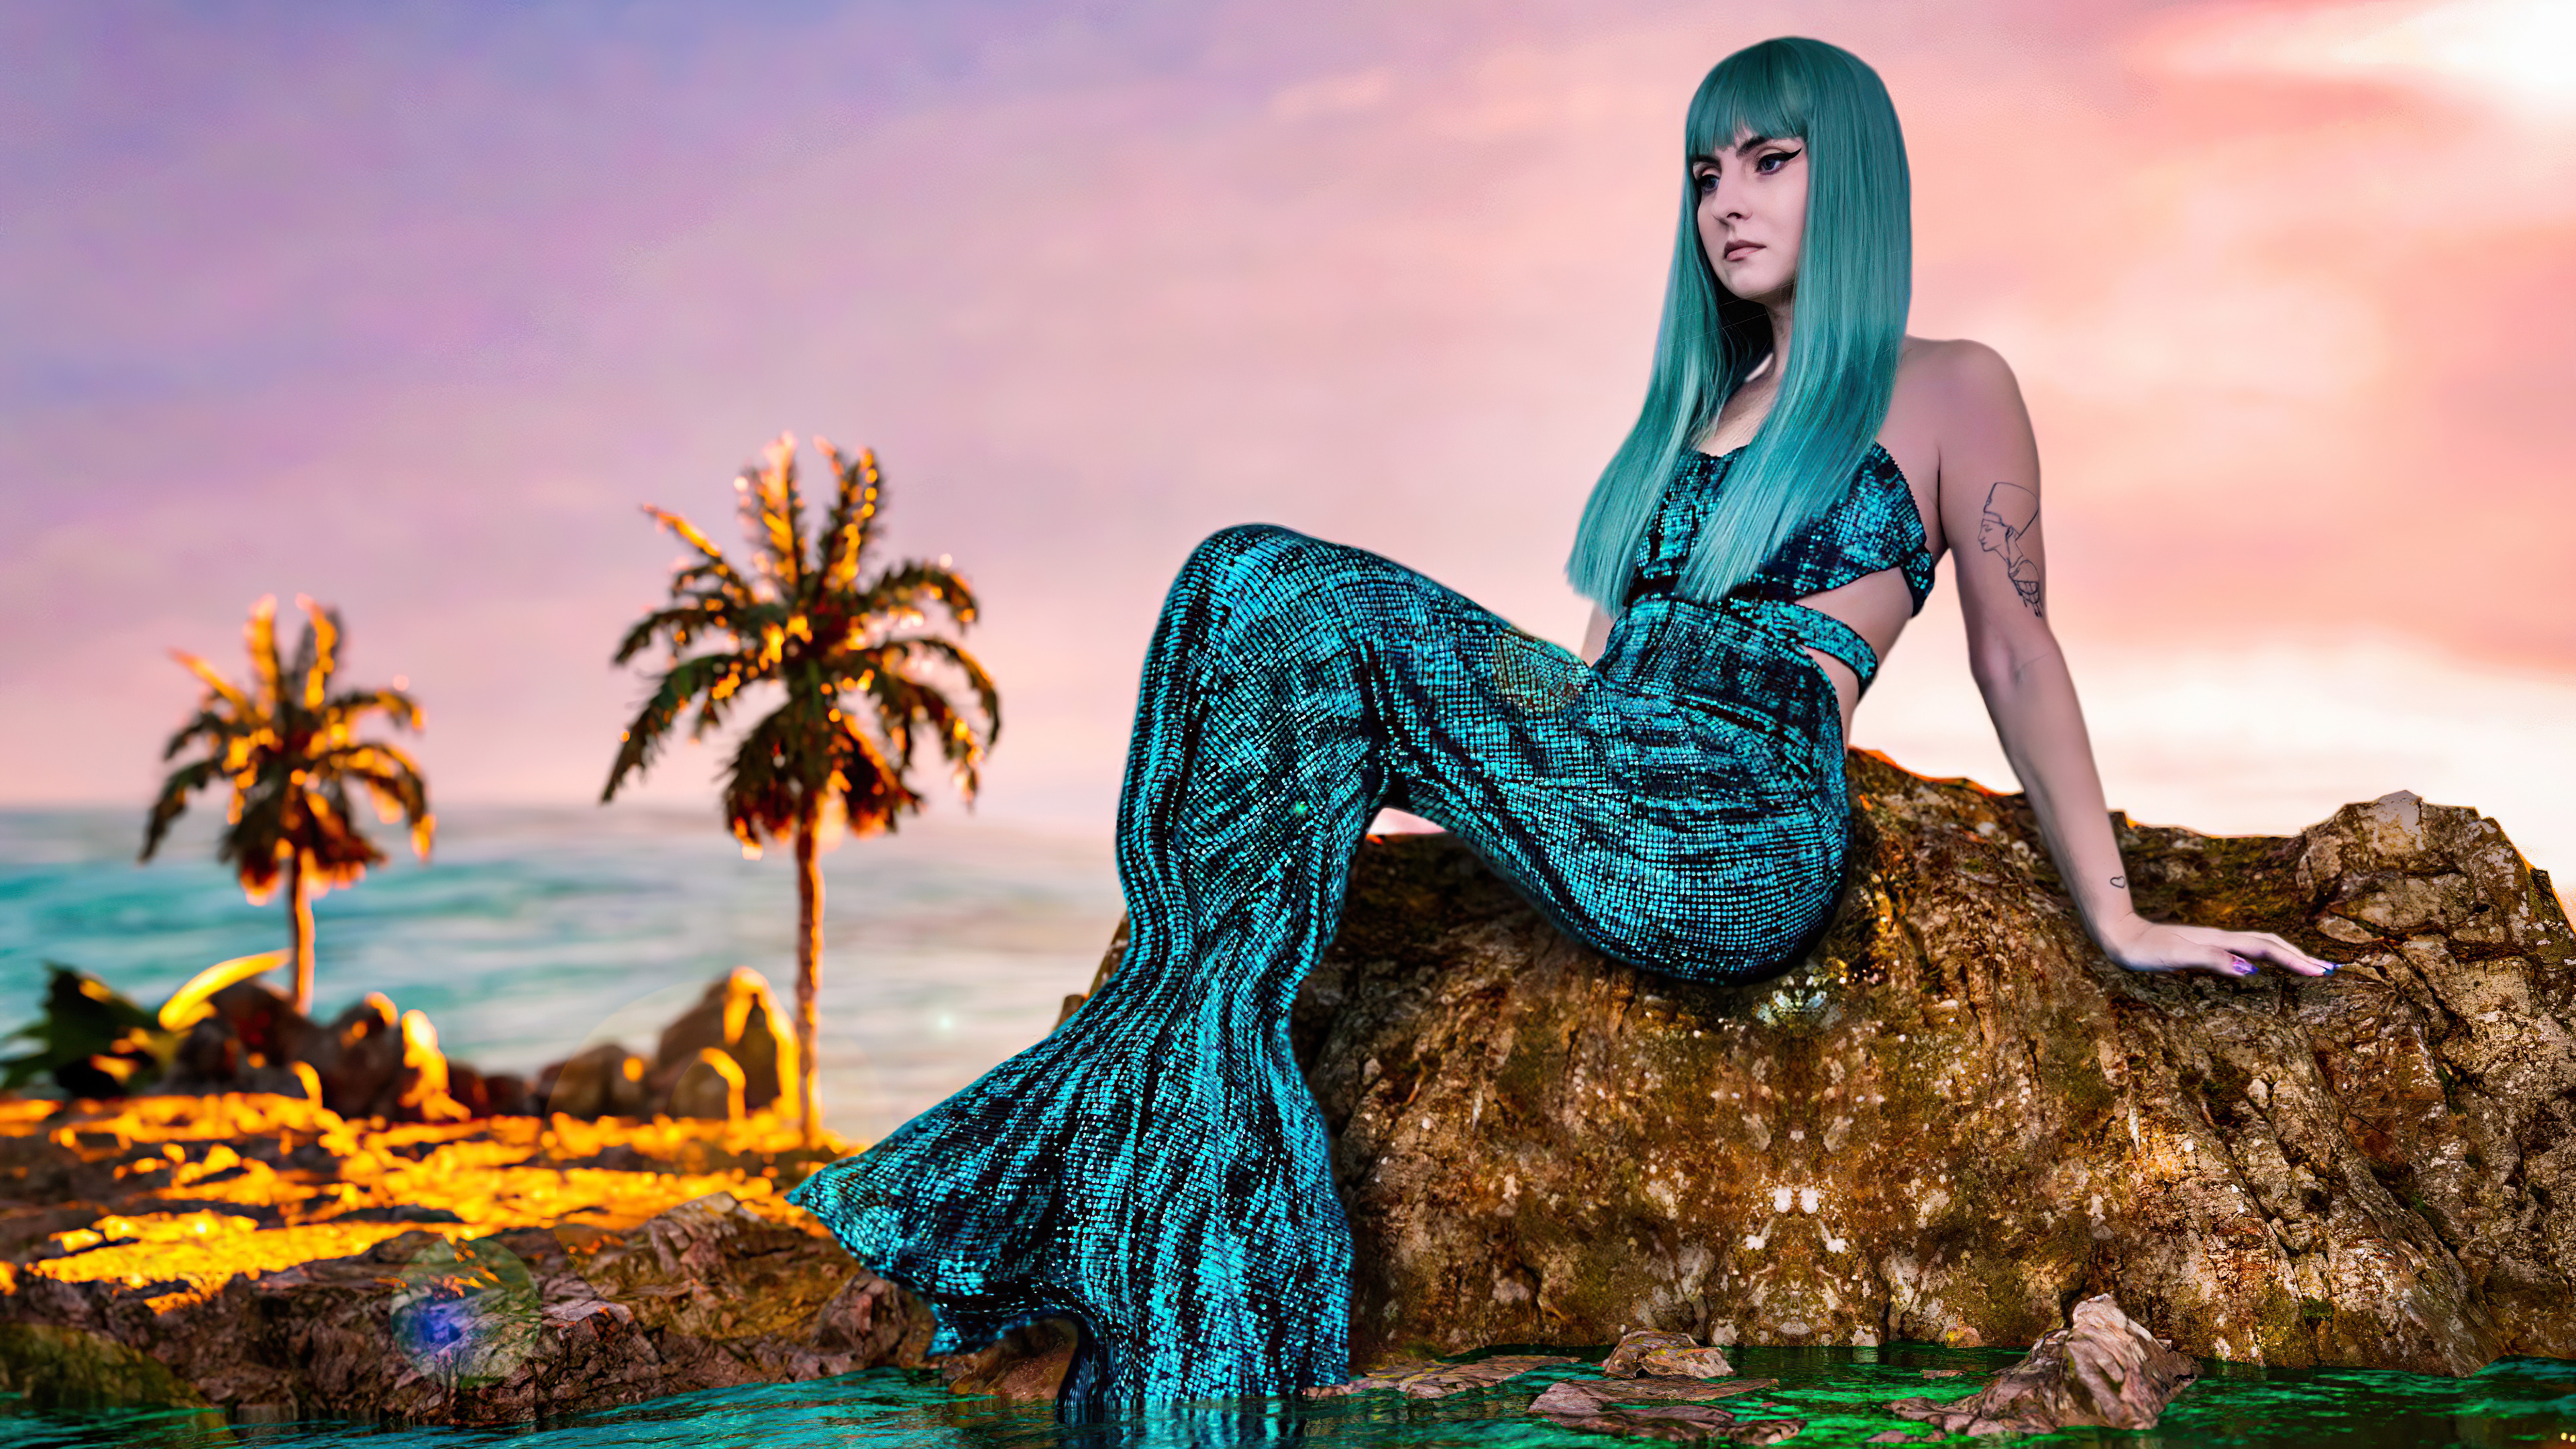 Девушка русалка с голубыми волосами сидит на камне